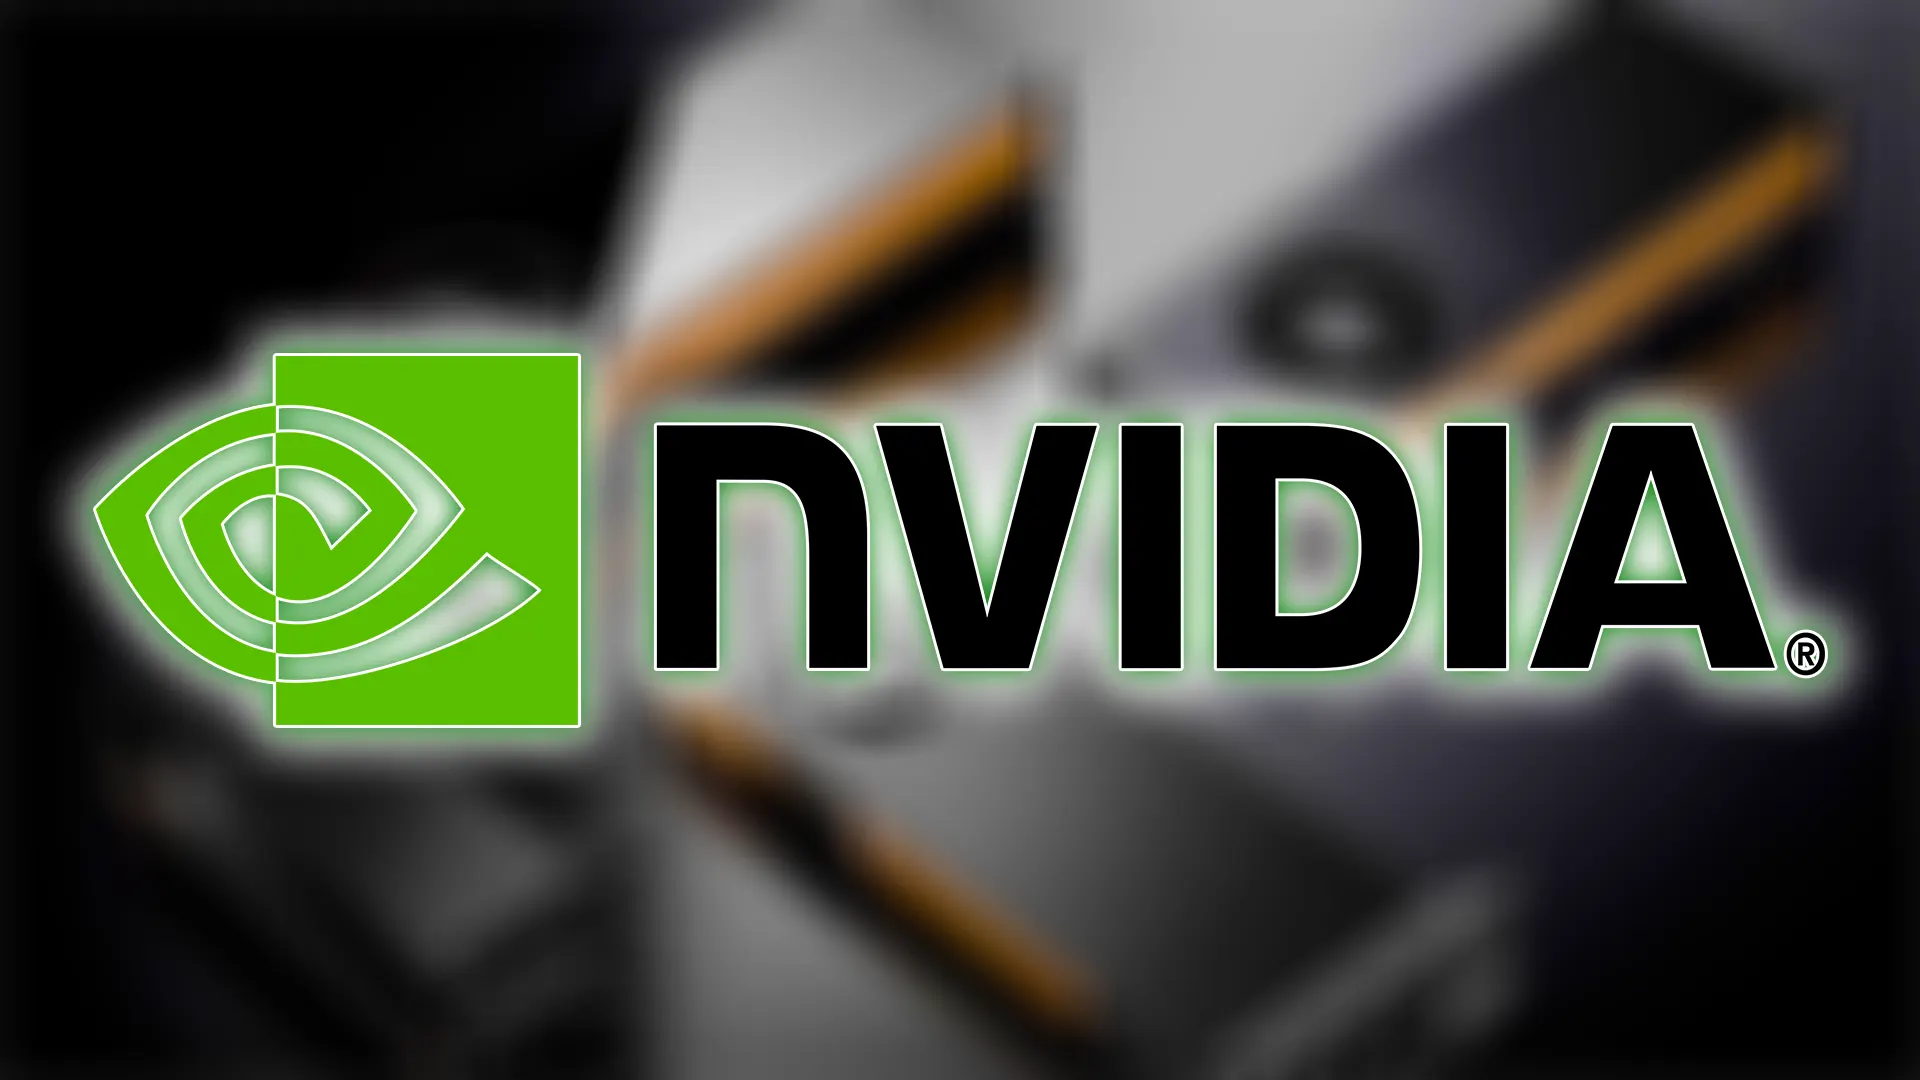 Os vazamentos sobre as novas placas de vídeo para workstations da Nvidia estavam certos. A RTX A4500 e A2000 foram anunciadas oficialmente!